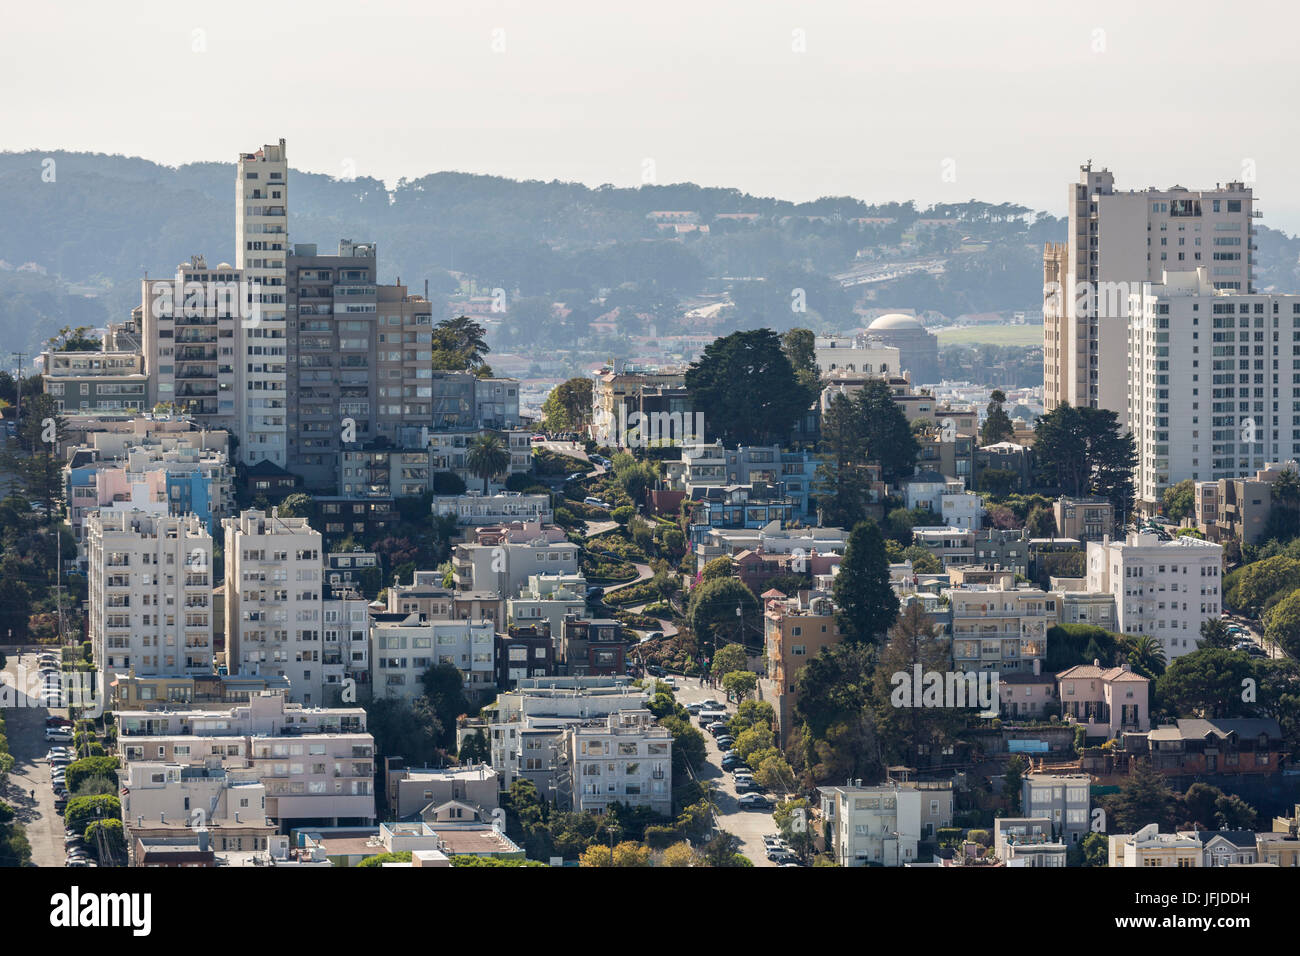 Cityscape with Lombard Street, San Francisco, Marin County, California, USA, Stock Photo